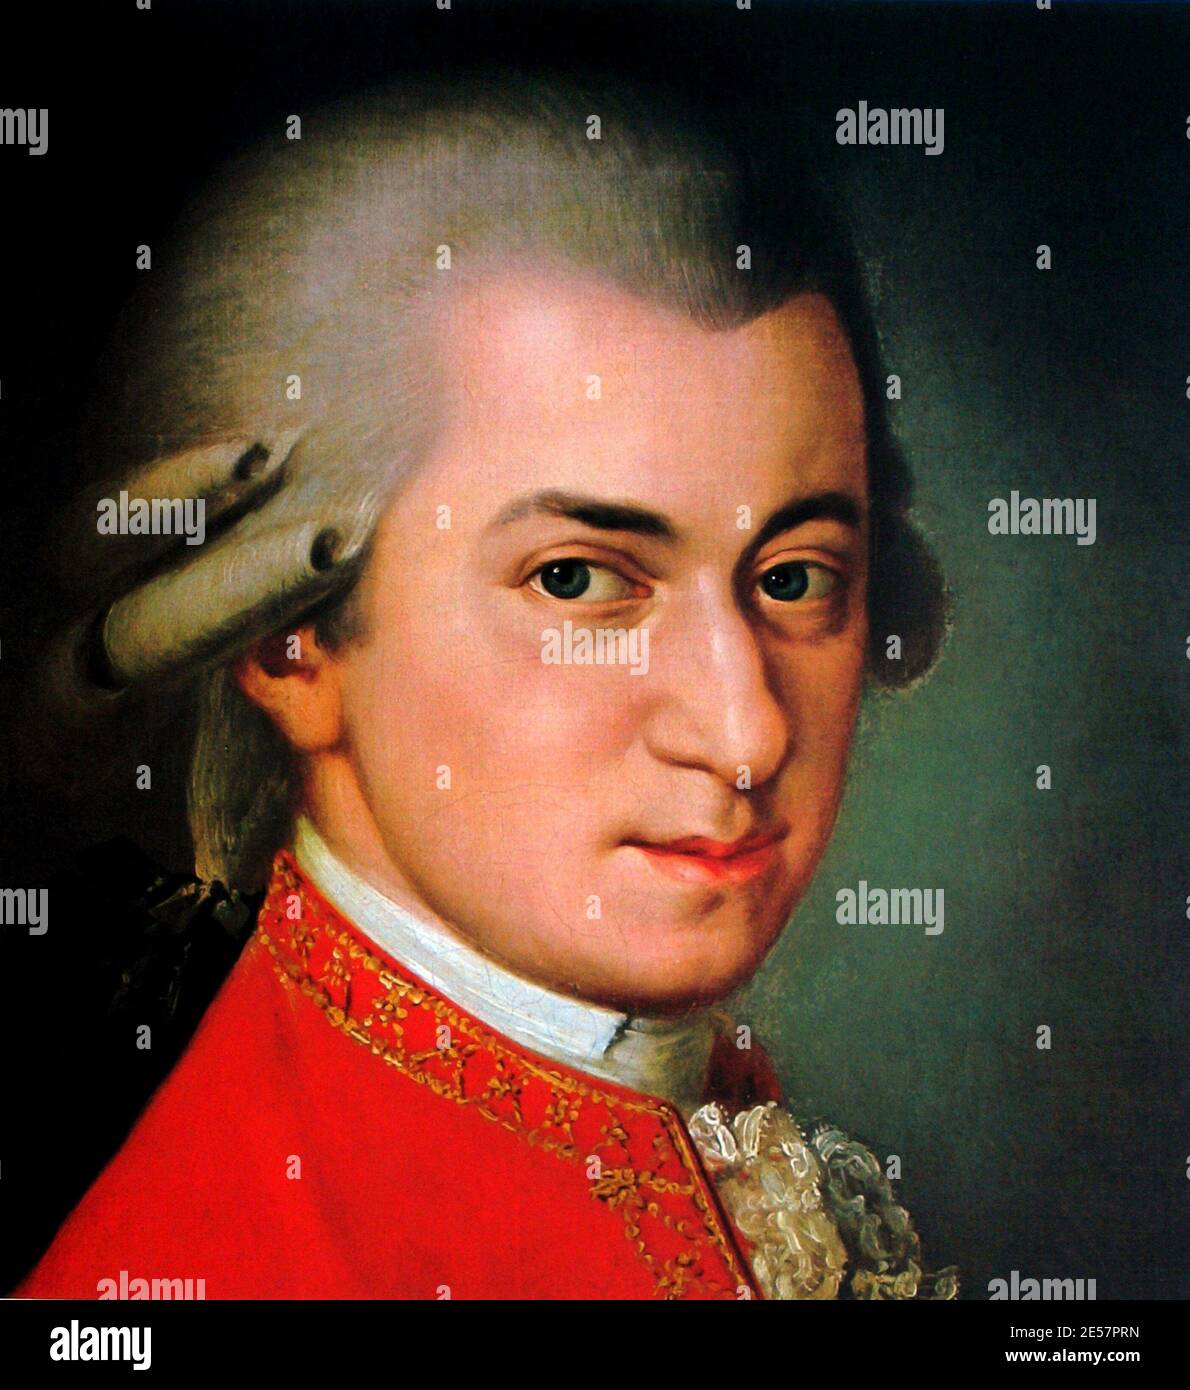 Il compositore WOLFANG AMADEUS MOZART ( 1756 - 1791 ) , ritratto di Barbara Kraft , Wien , Società Musica amici - MUSICA CLASSICA - CLASSICA - COMPOSITORE - wig - parruca - collare - colletto - ritratto ---- Archivio GBB Foto Stock